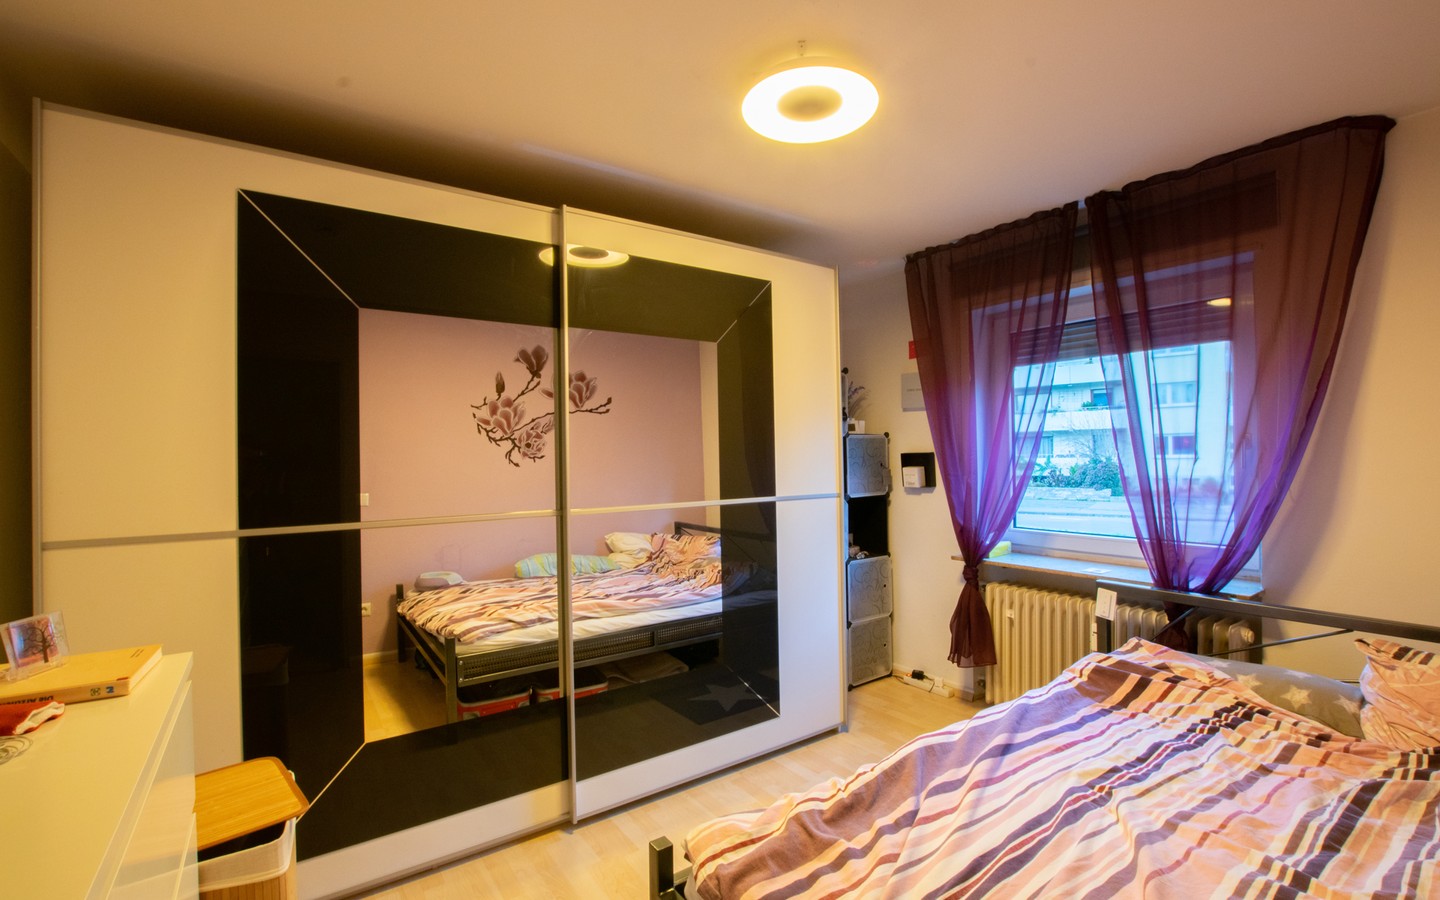 Schlafzimmer EG rechts - HD-Neuenheim: Top-Investment in bevorzugter Lage